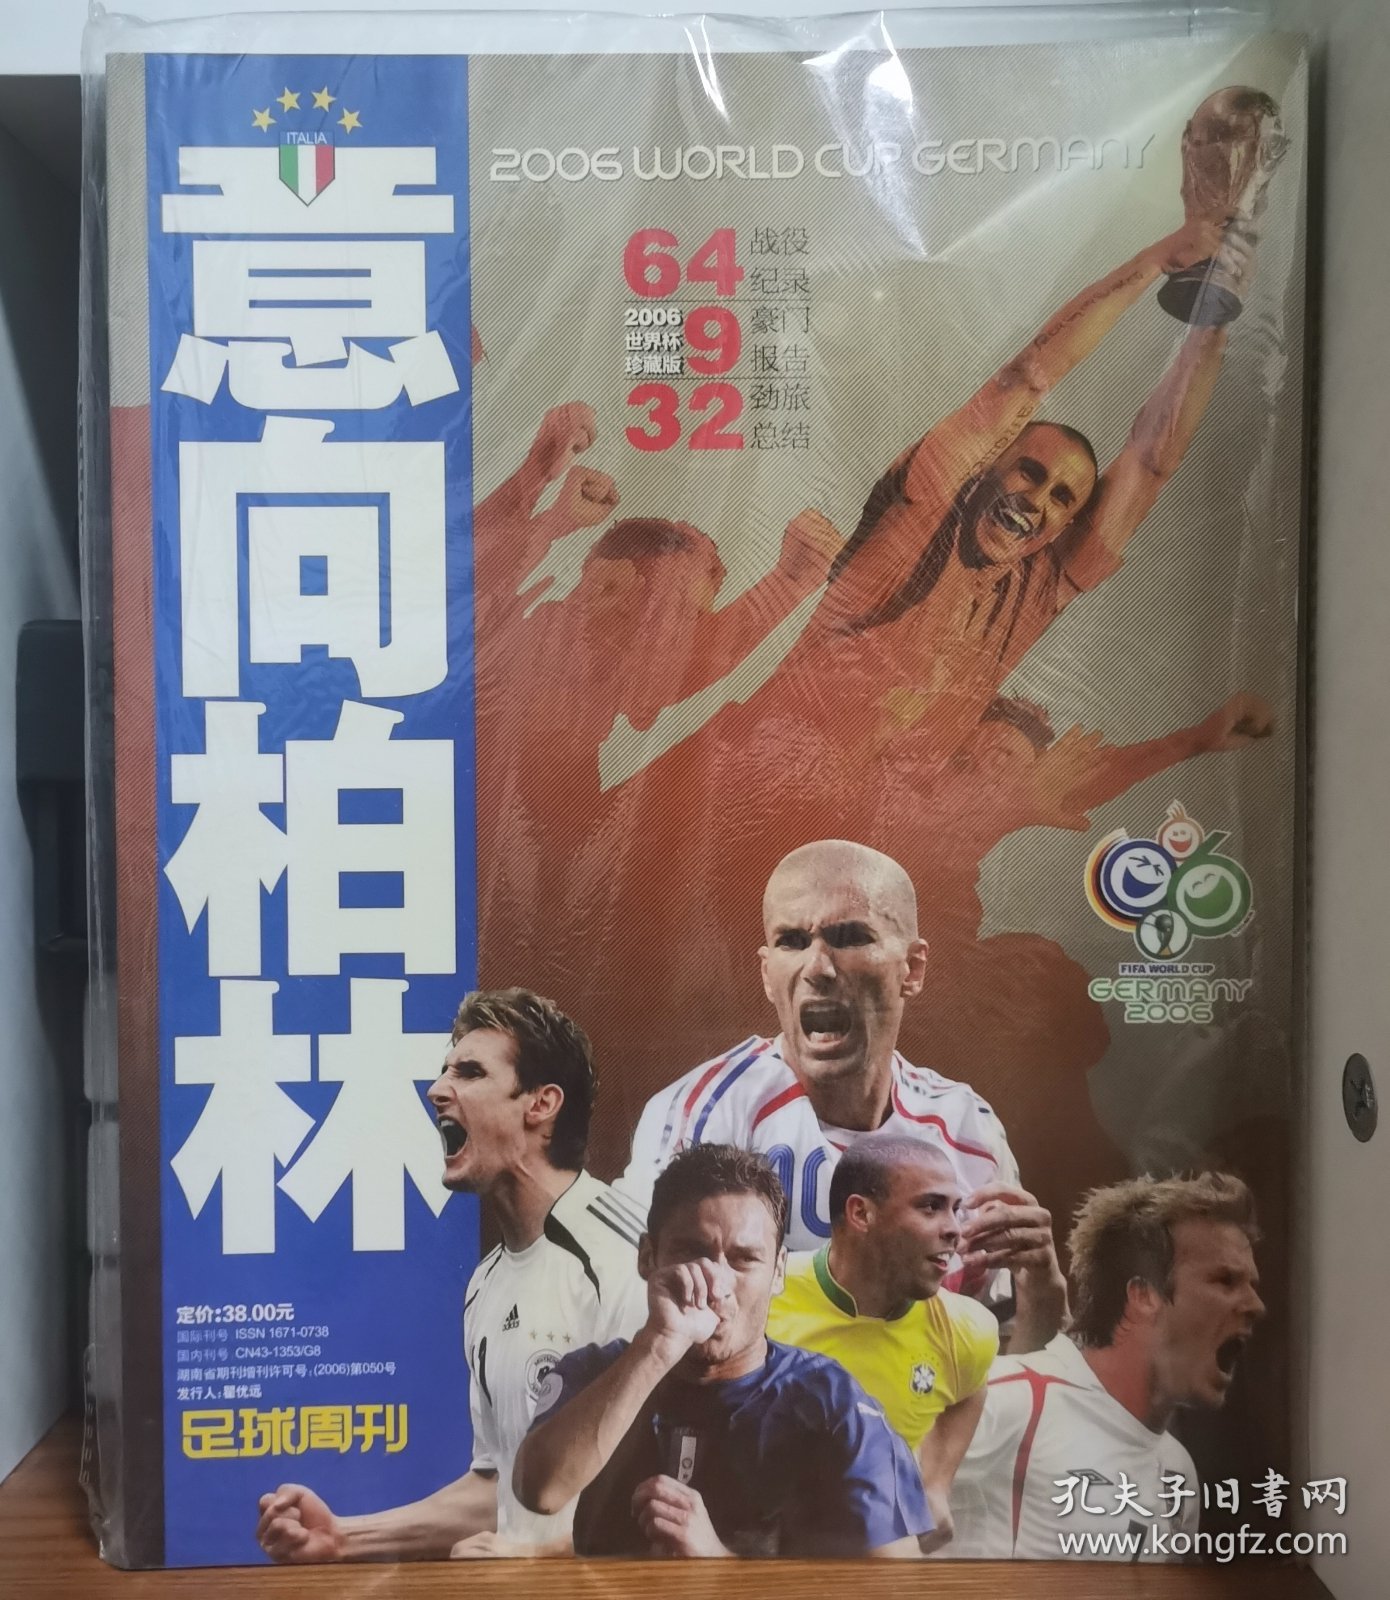 足球周刊 意向柏林 2006年世界杯珍藏版 品相全新 带原版塑封袋